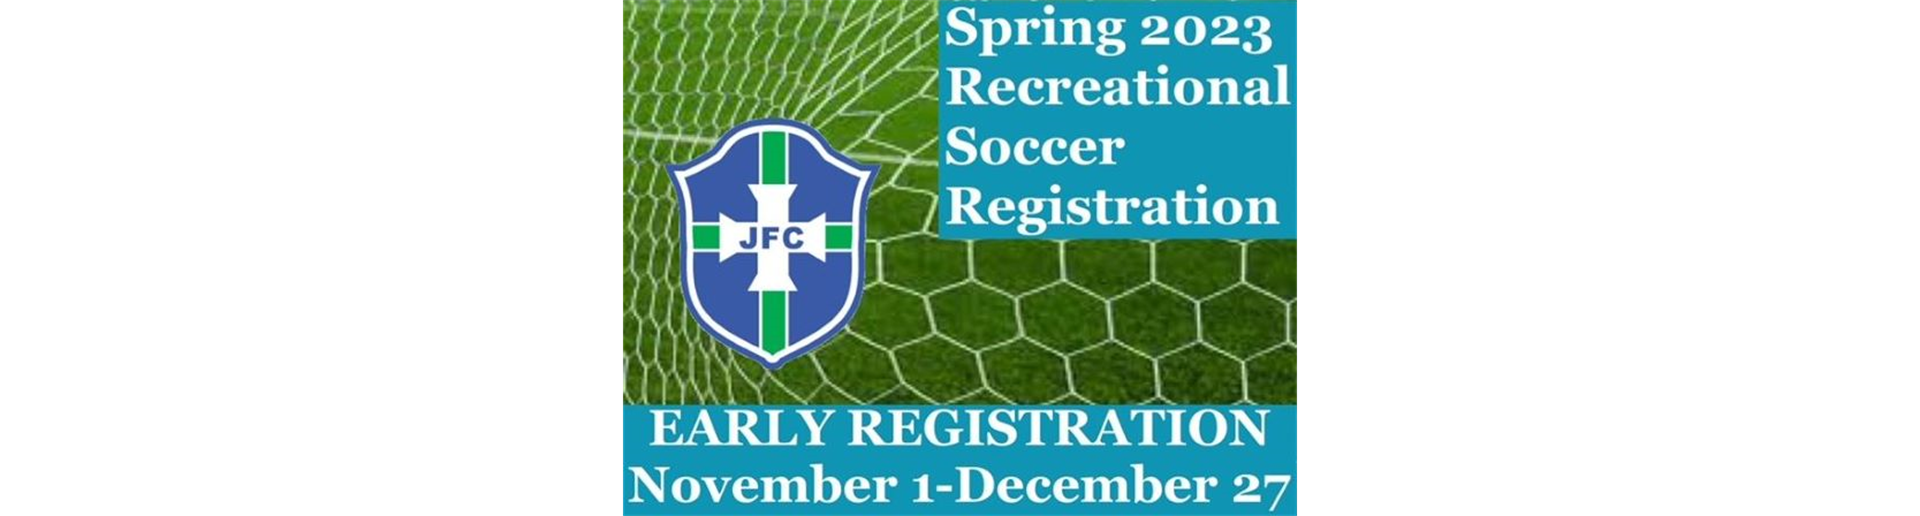 Spring 2023 Recreational Soccer - OPENS November 1!